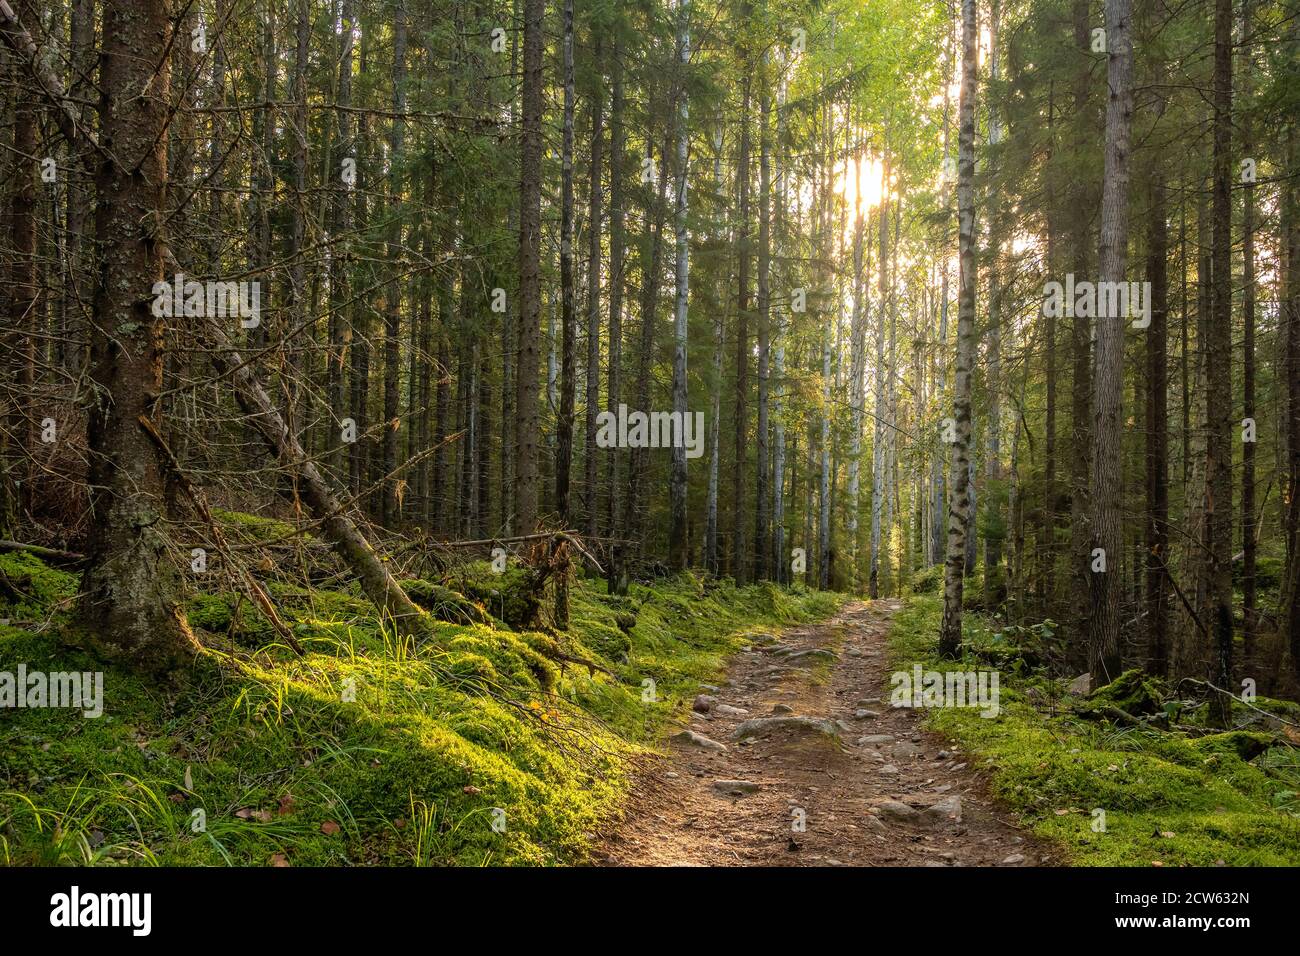 Camino a través del bosque místico de pinos y abetos con musgo verde. Foto de stock